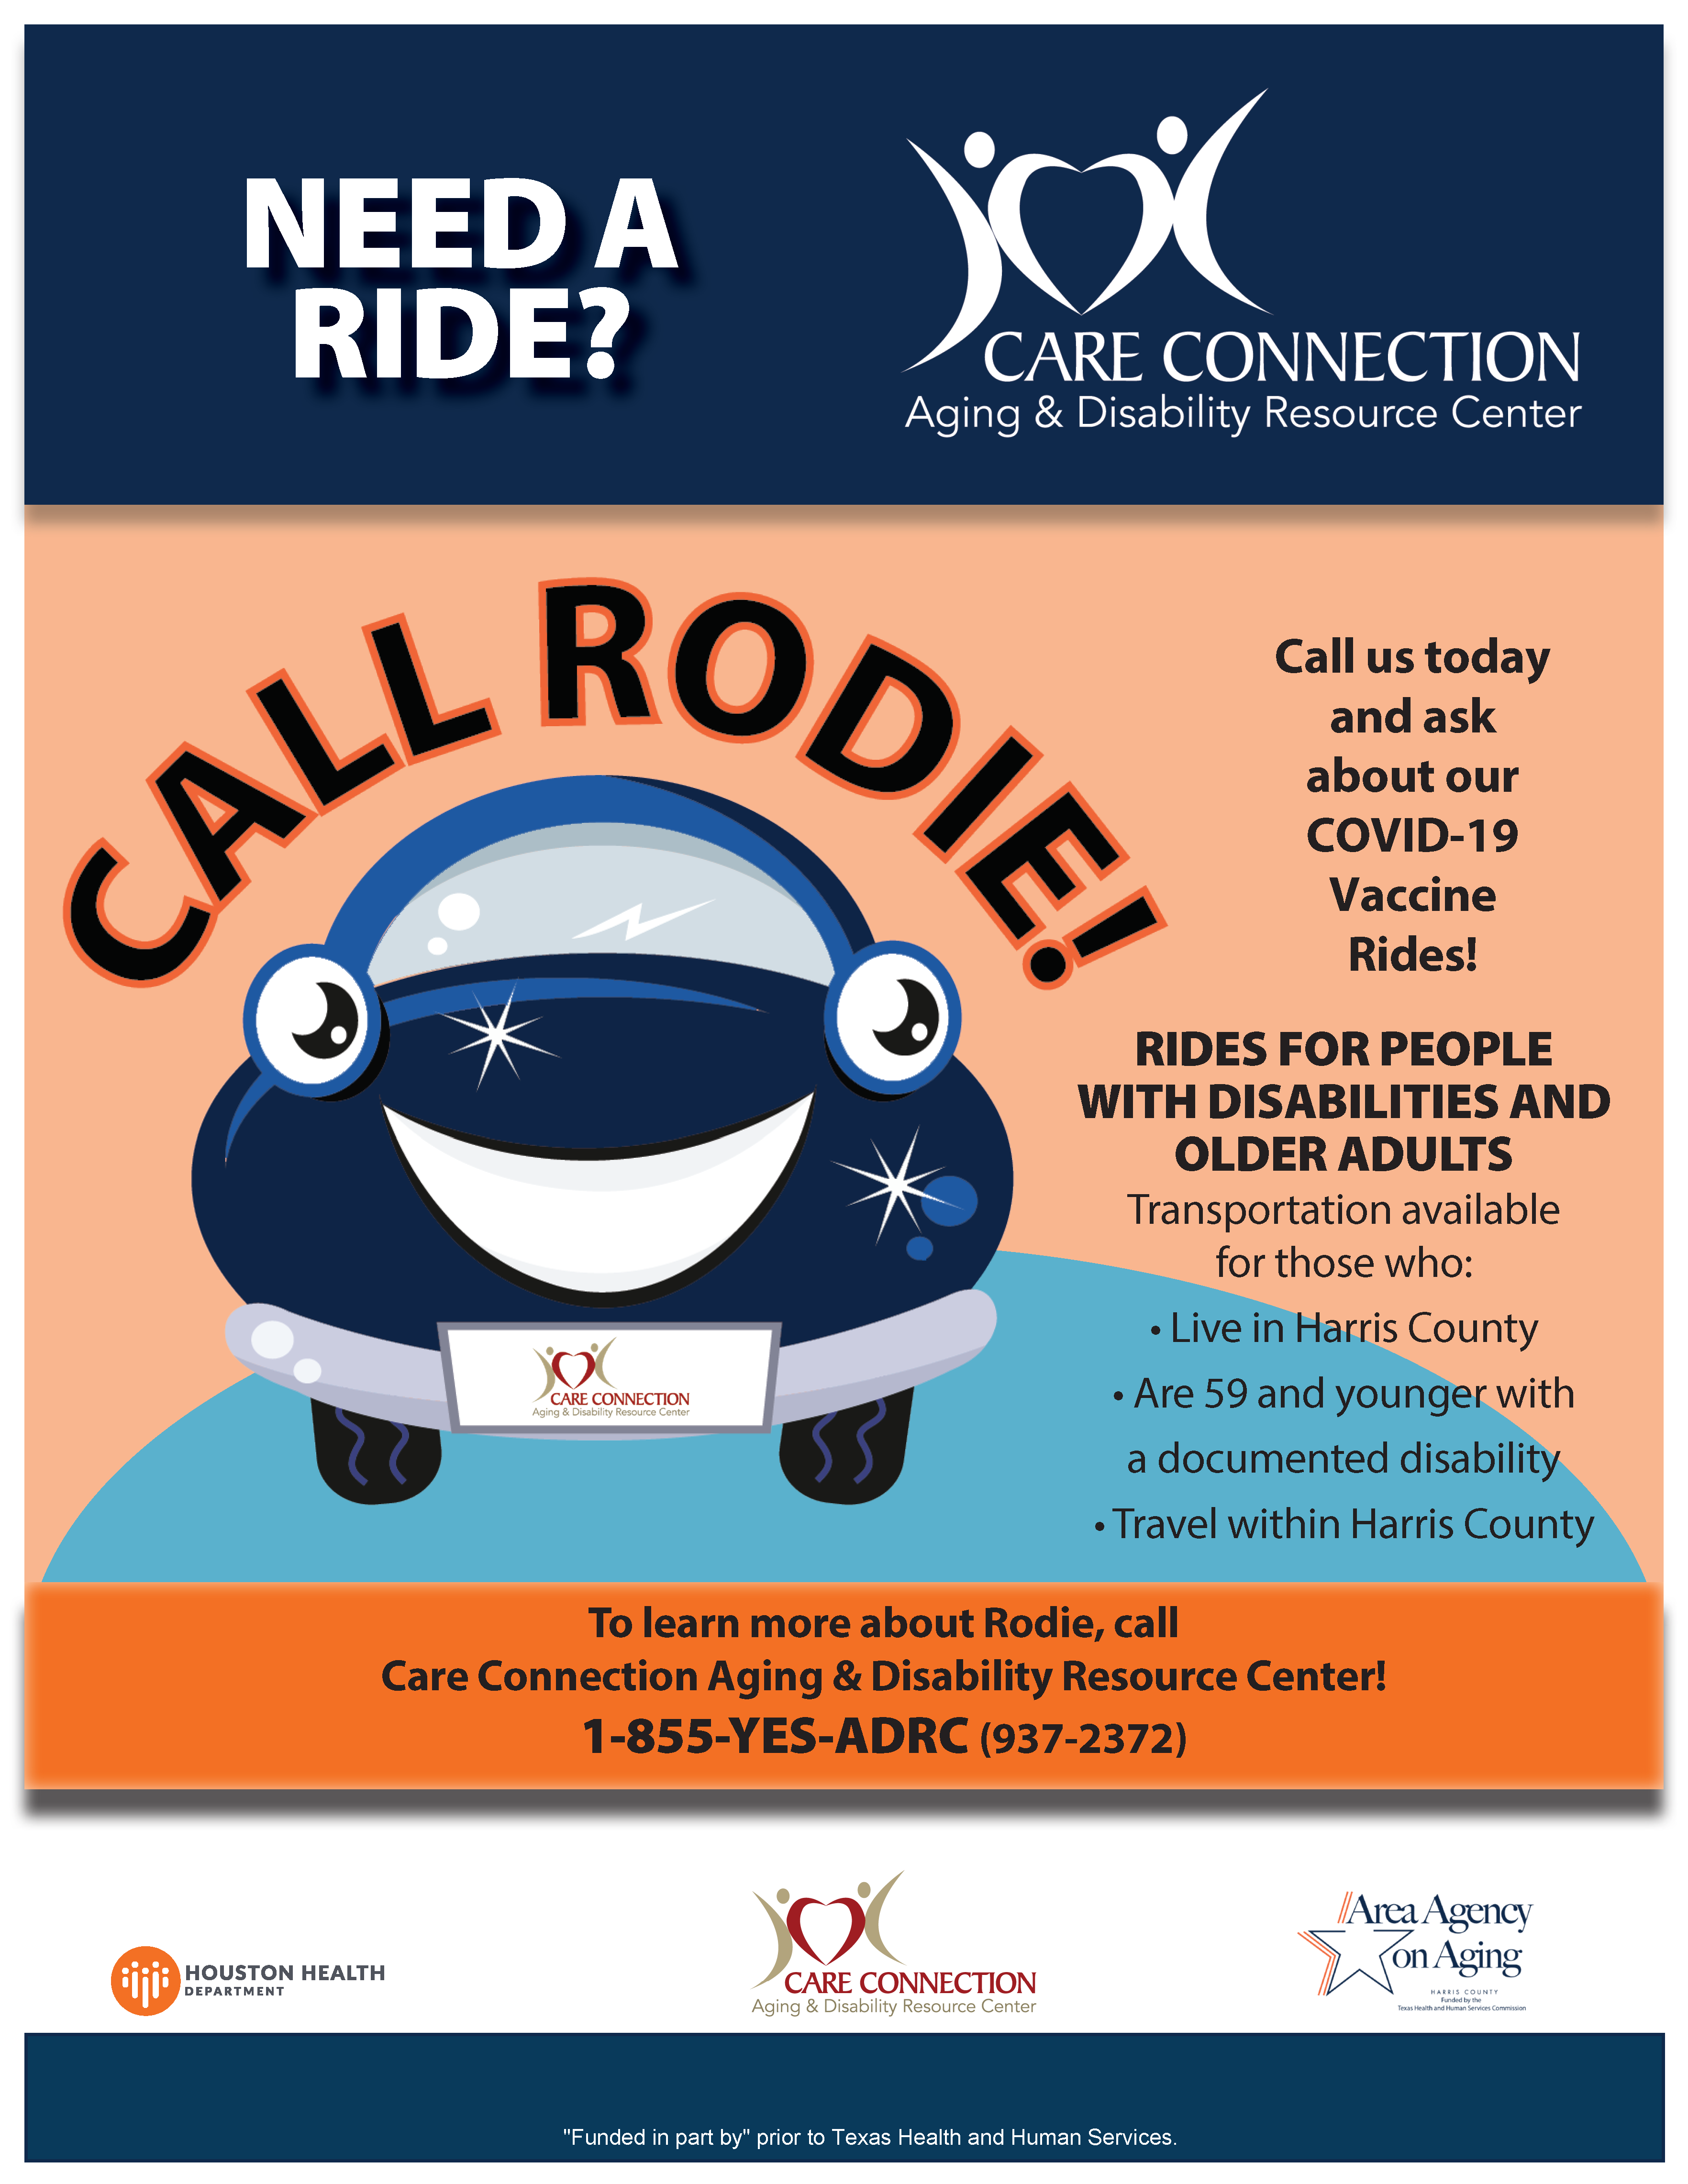 Rodie Ride service